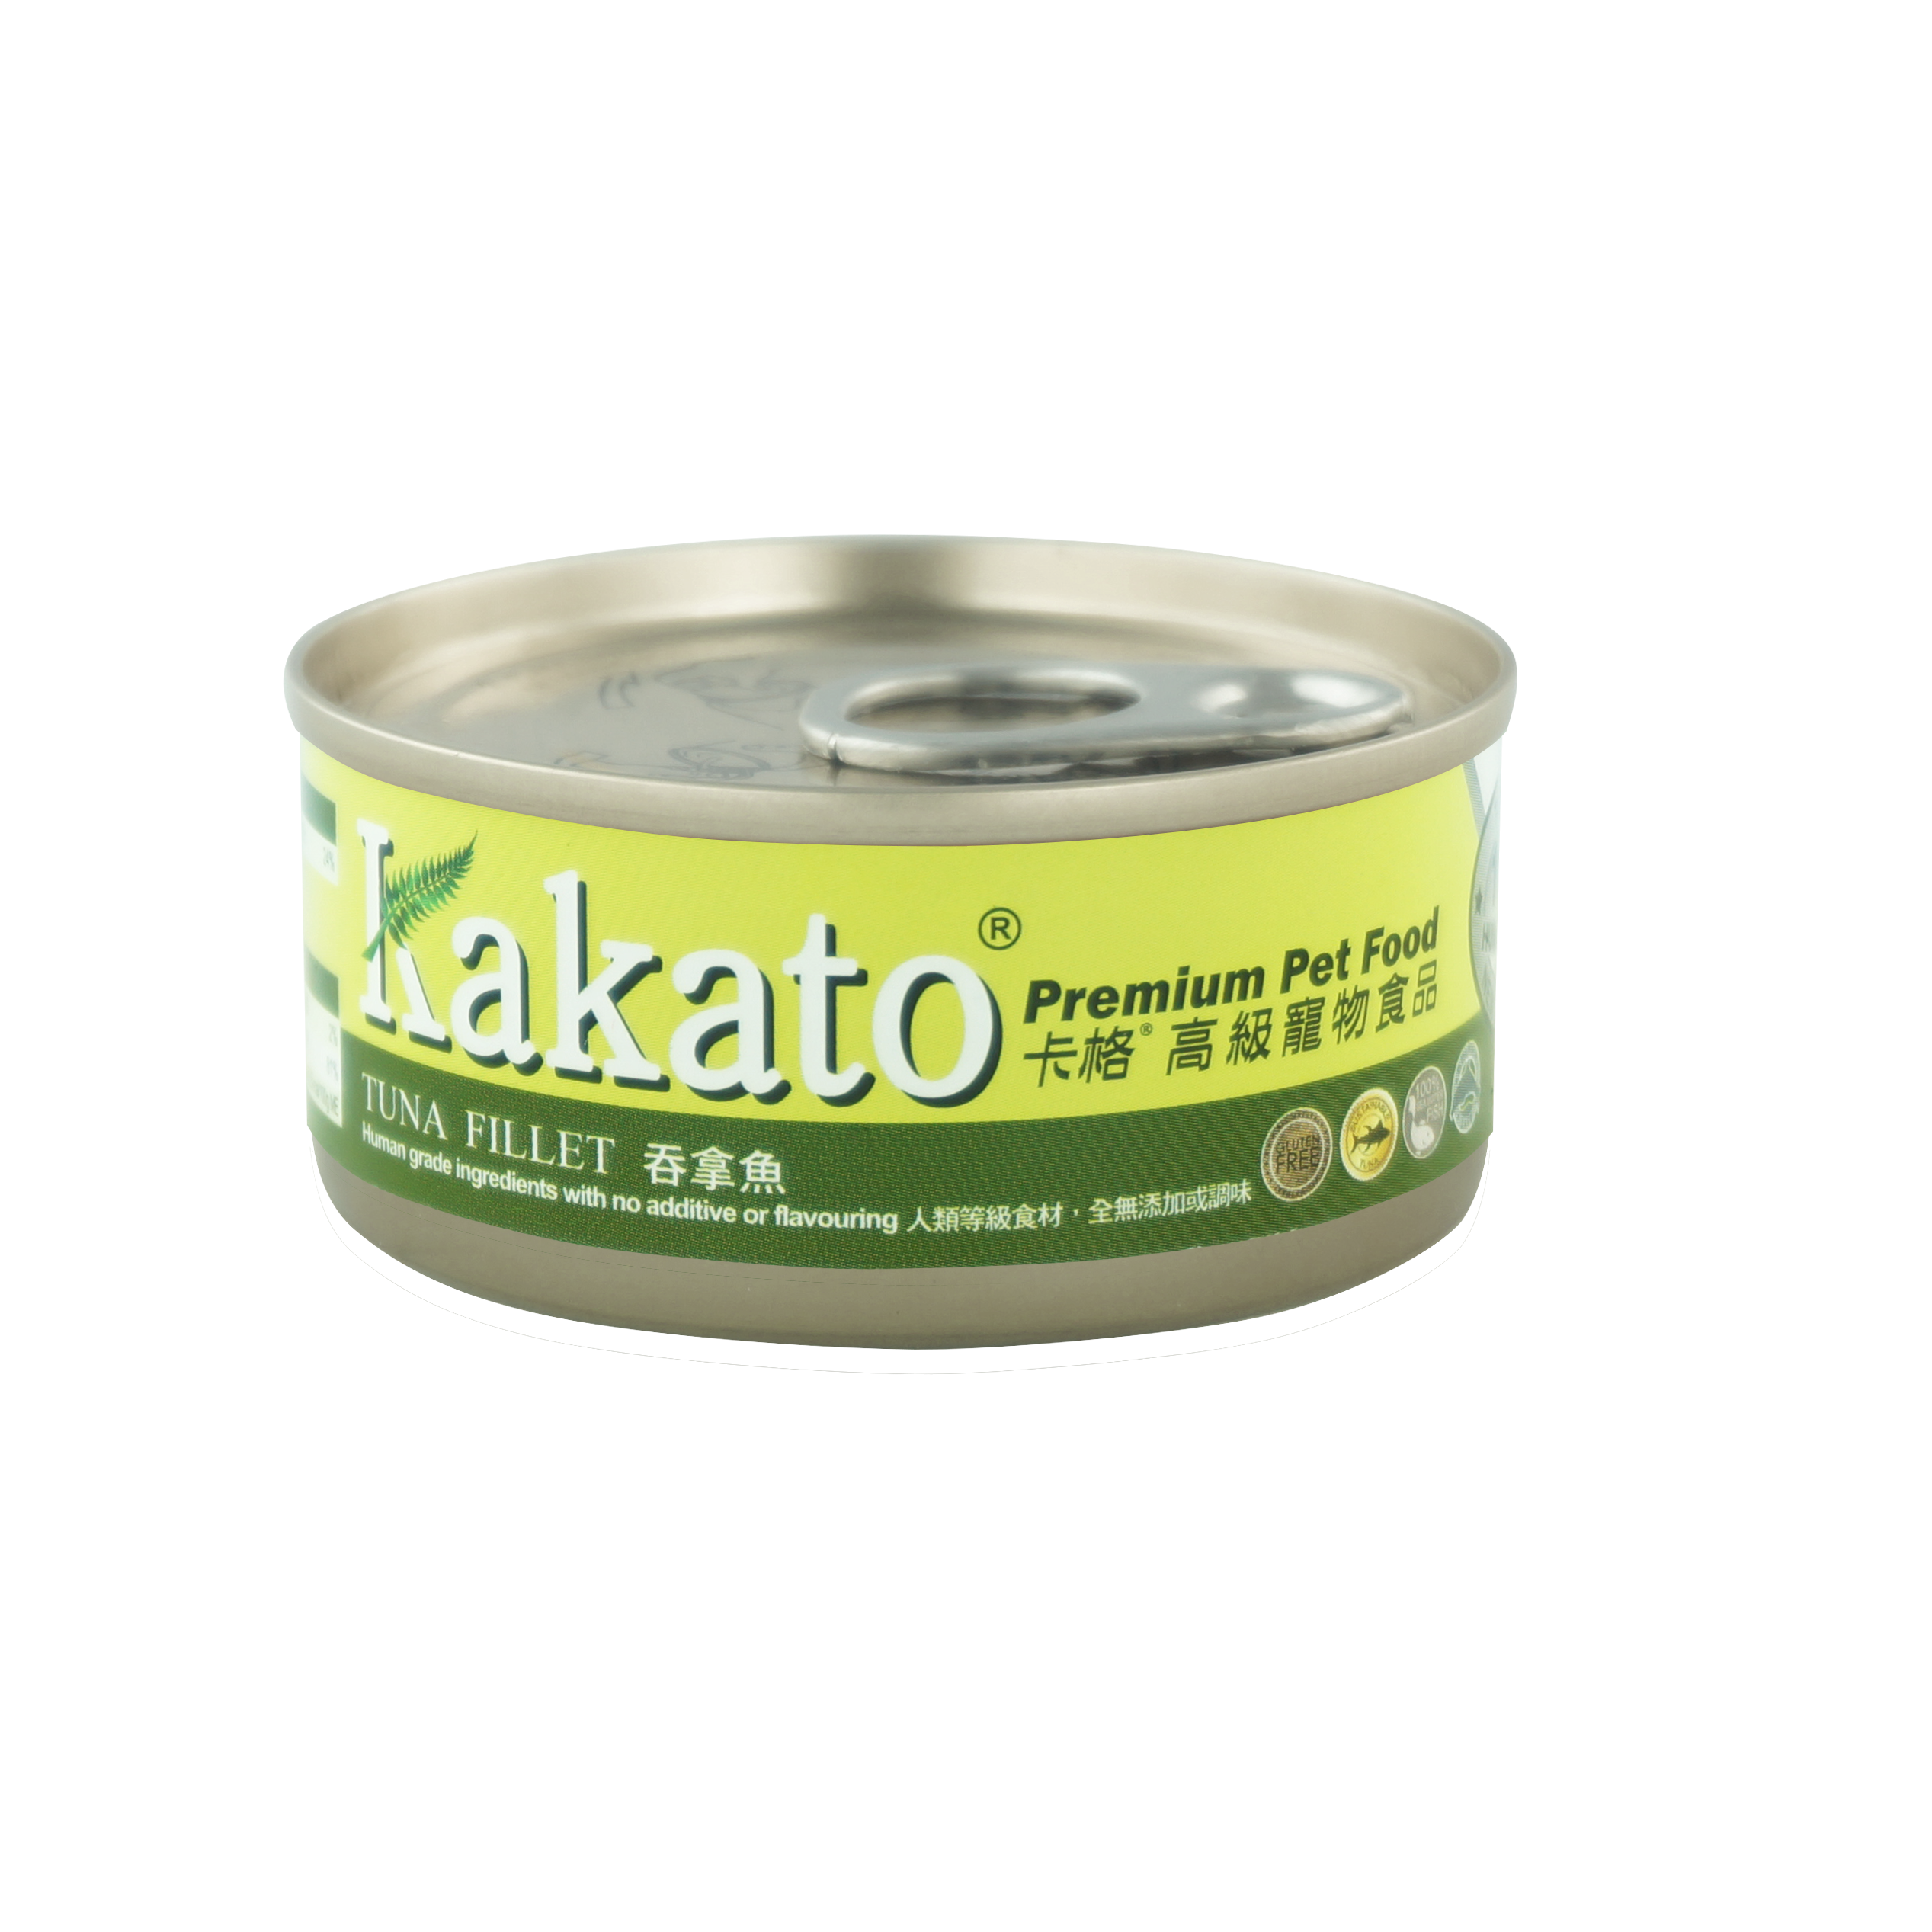 kakato tuna product shot